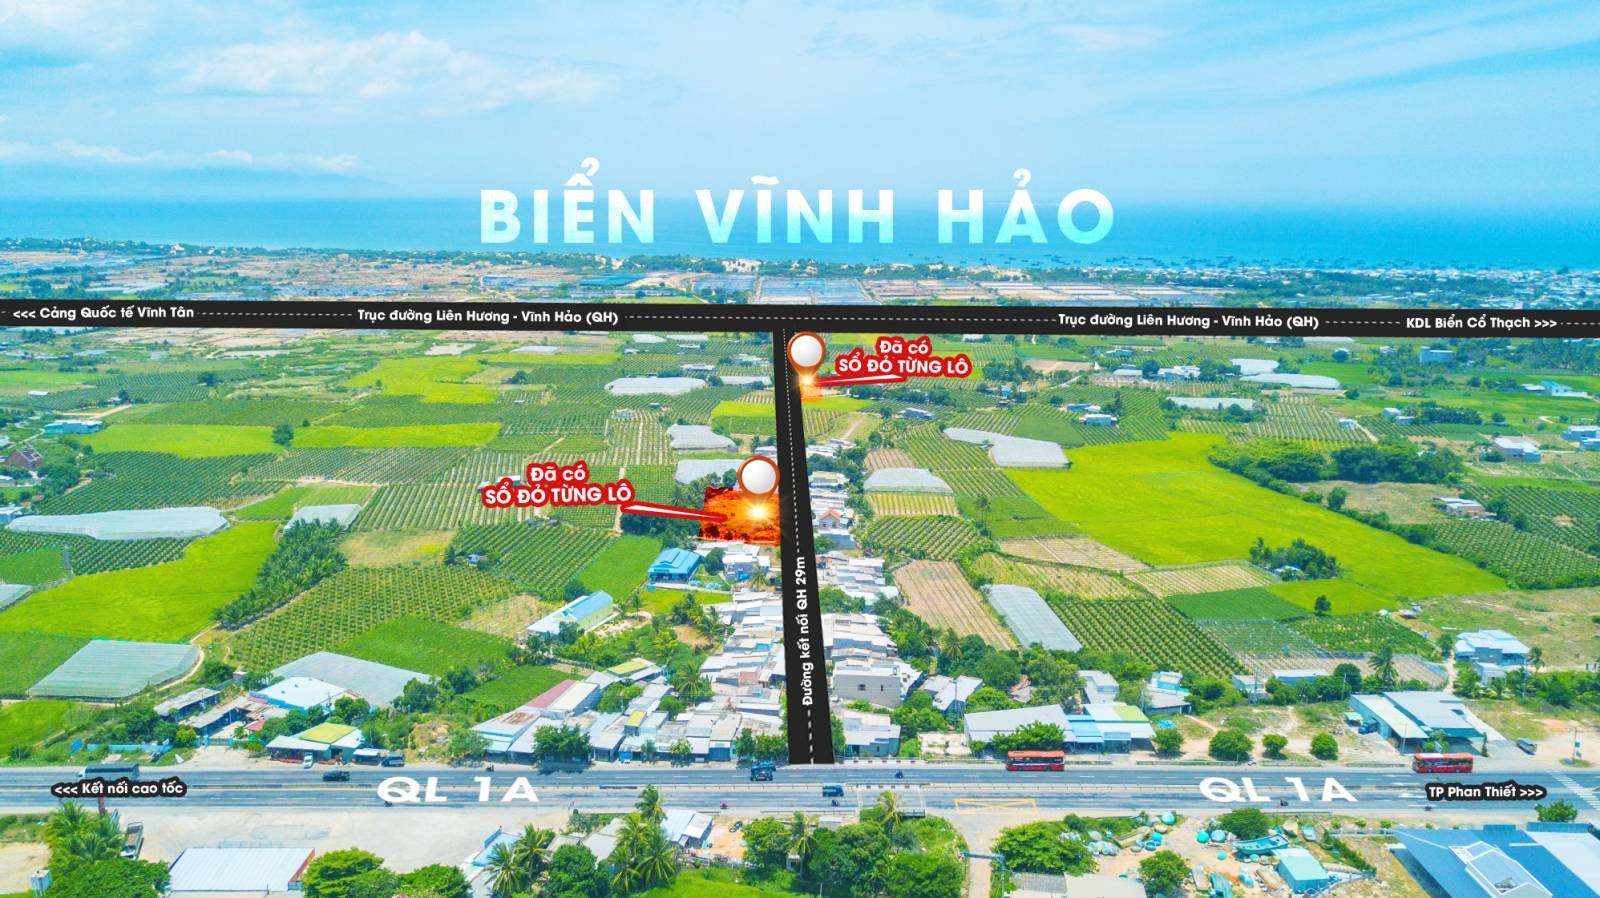 Cần ra lô đất nền biển Bình Thuận full thổ cư đất đấu giá của Nhà Nước